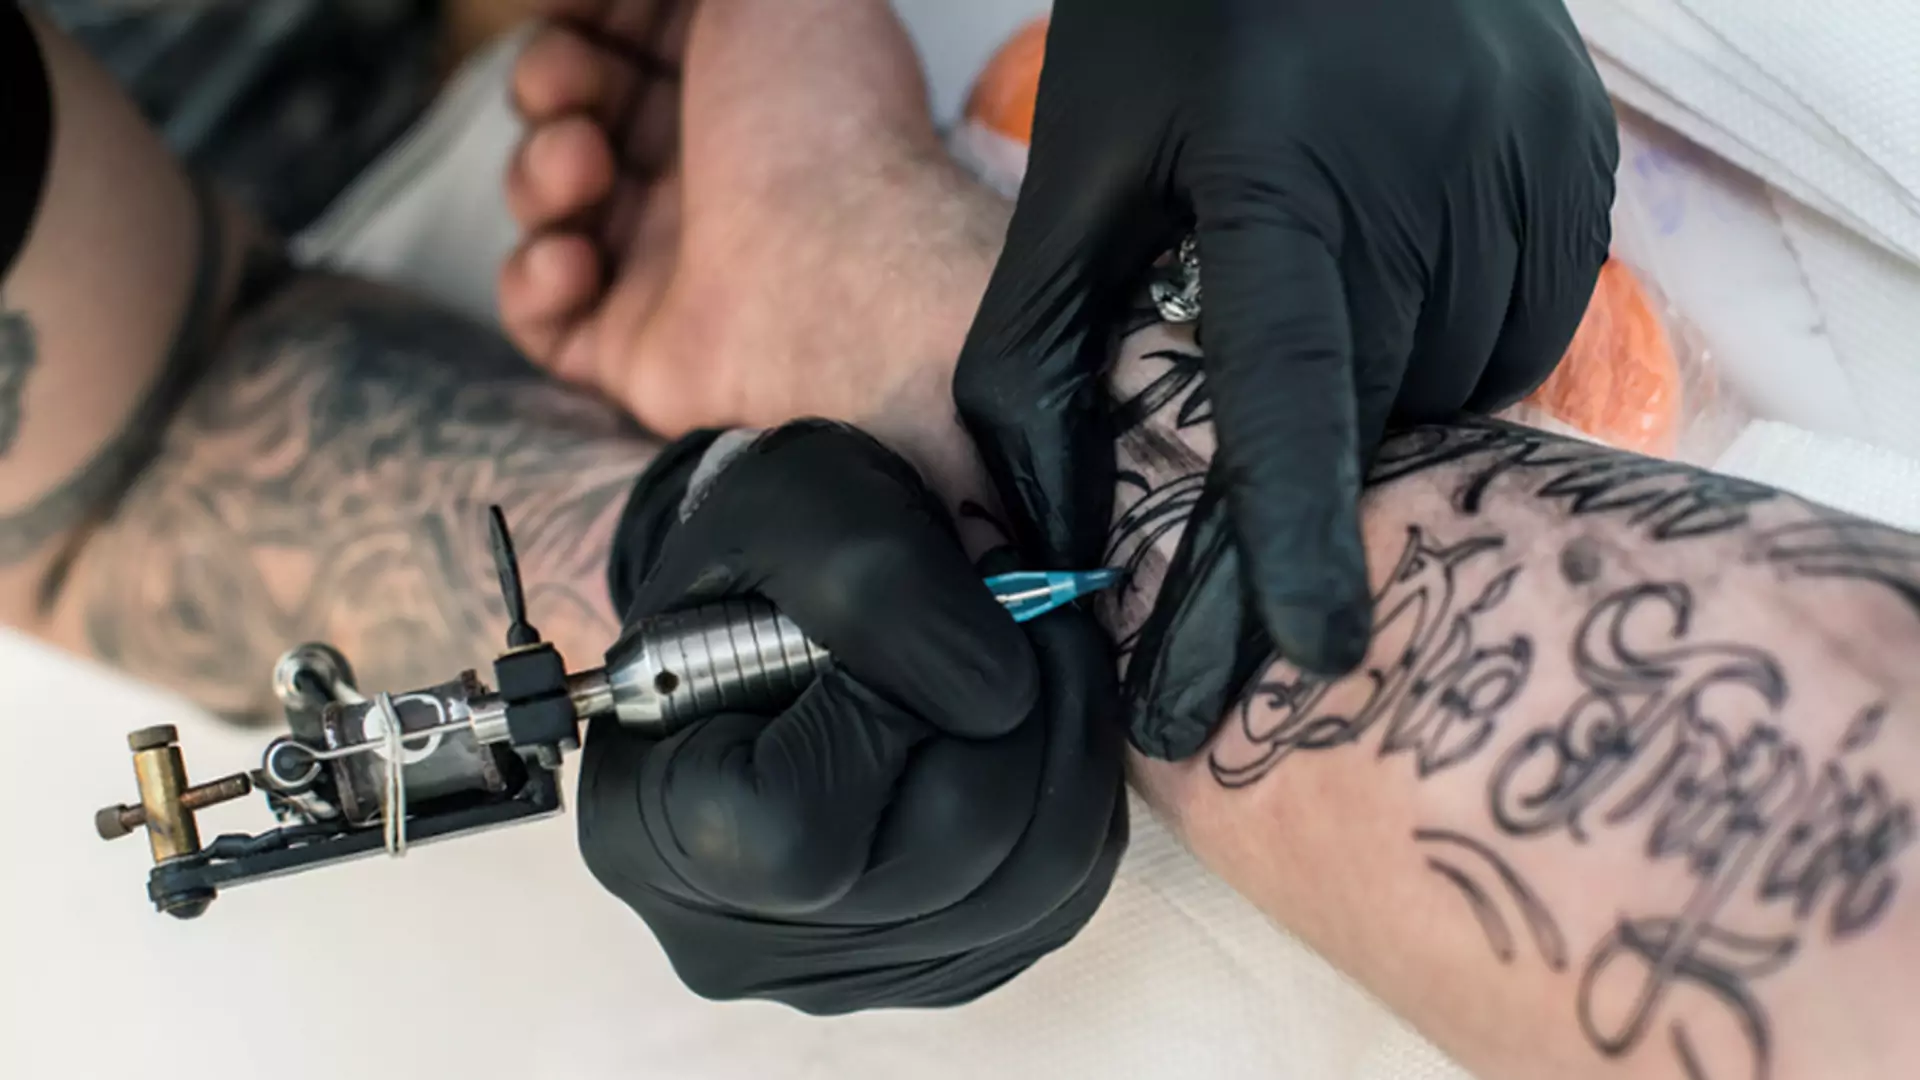 Coraz więcej artystów zaczyna tatuować. Sposób na łatwy zarobek, czy coś więcej?